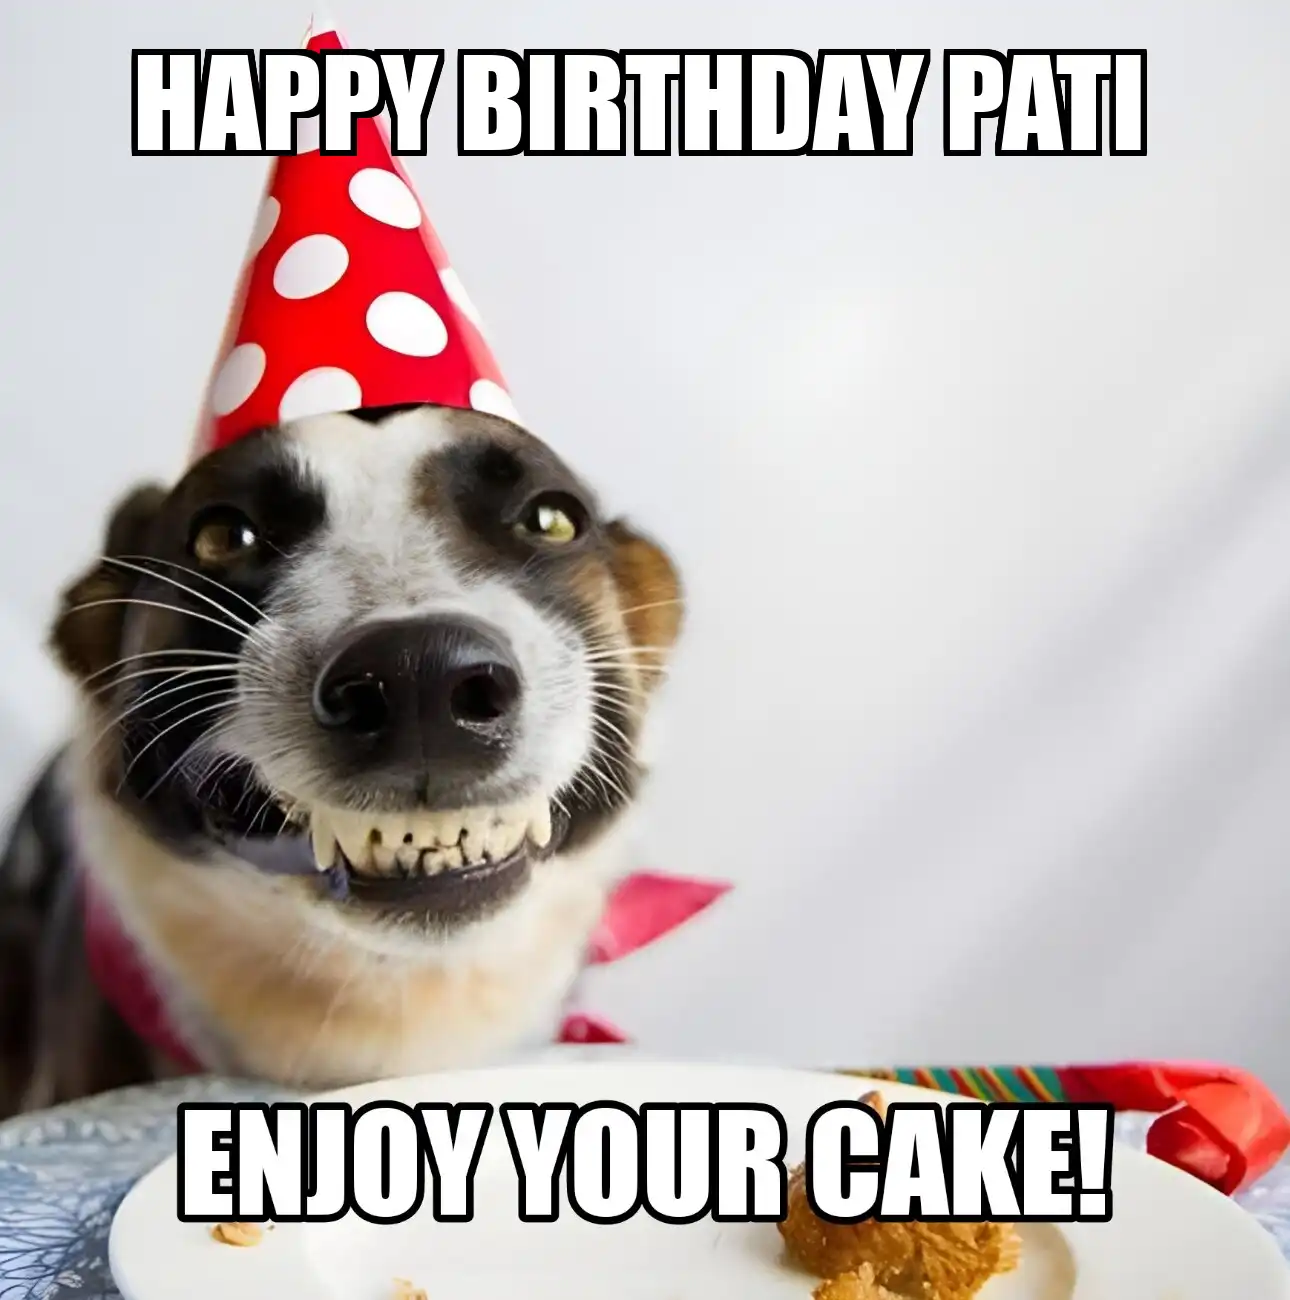 Happy Birthday Pati Enjoy Your Cake Dog Meme